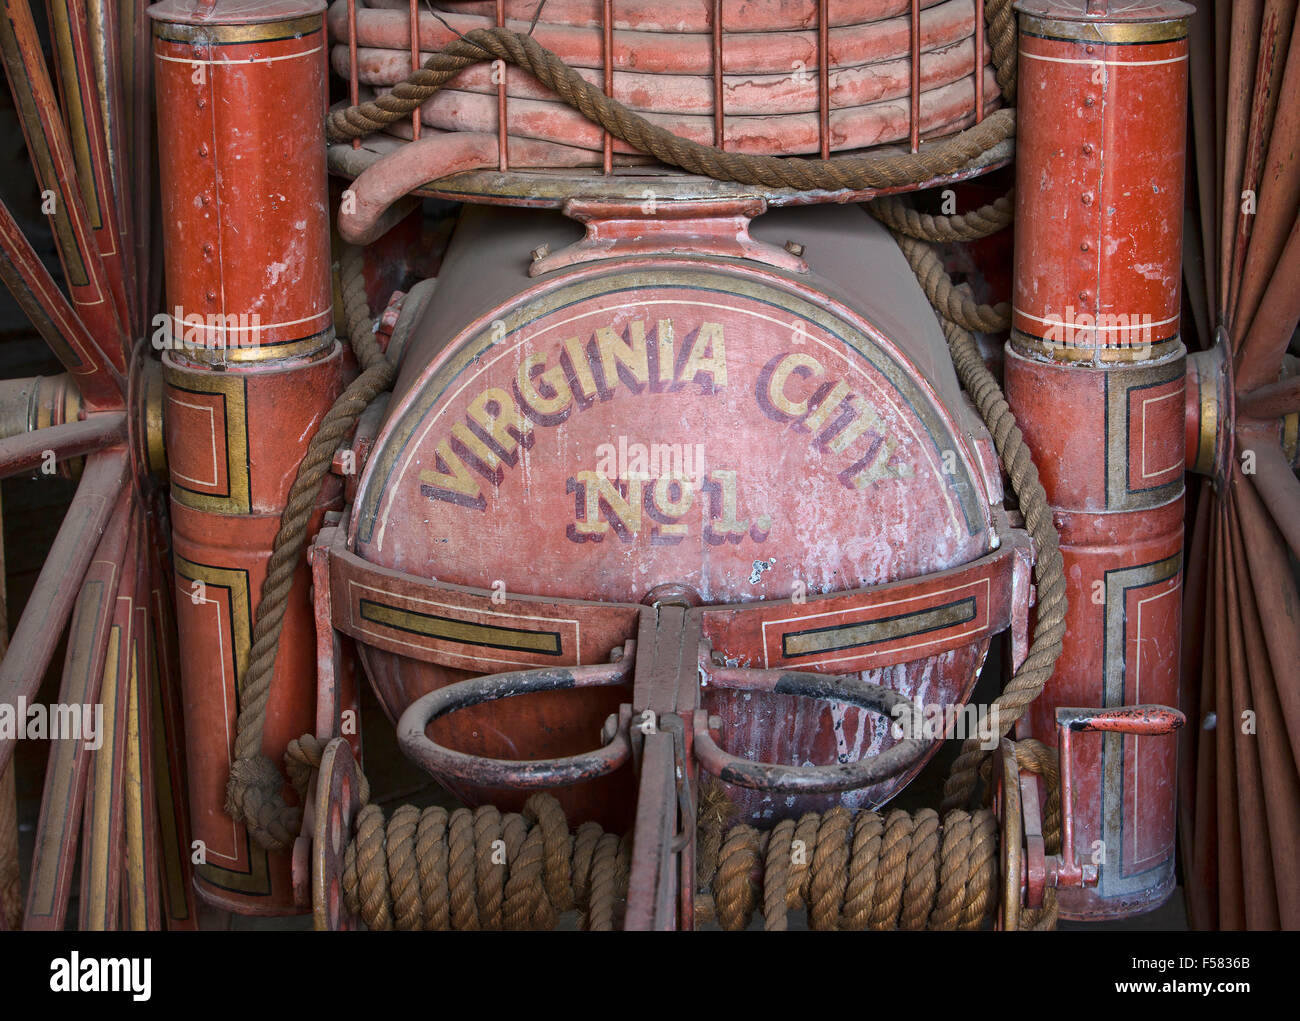 Virginia City Montana historic city Stock Photo